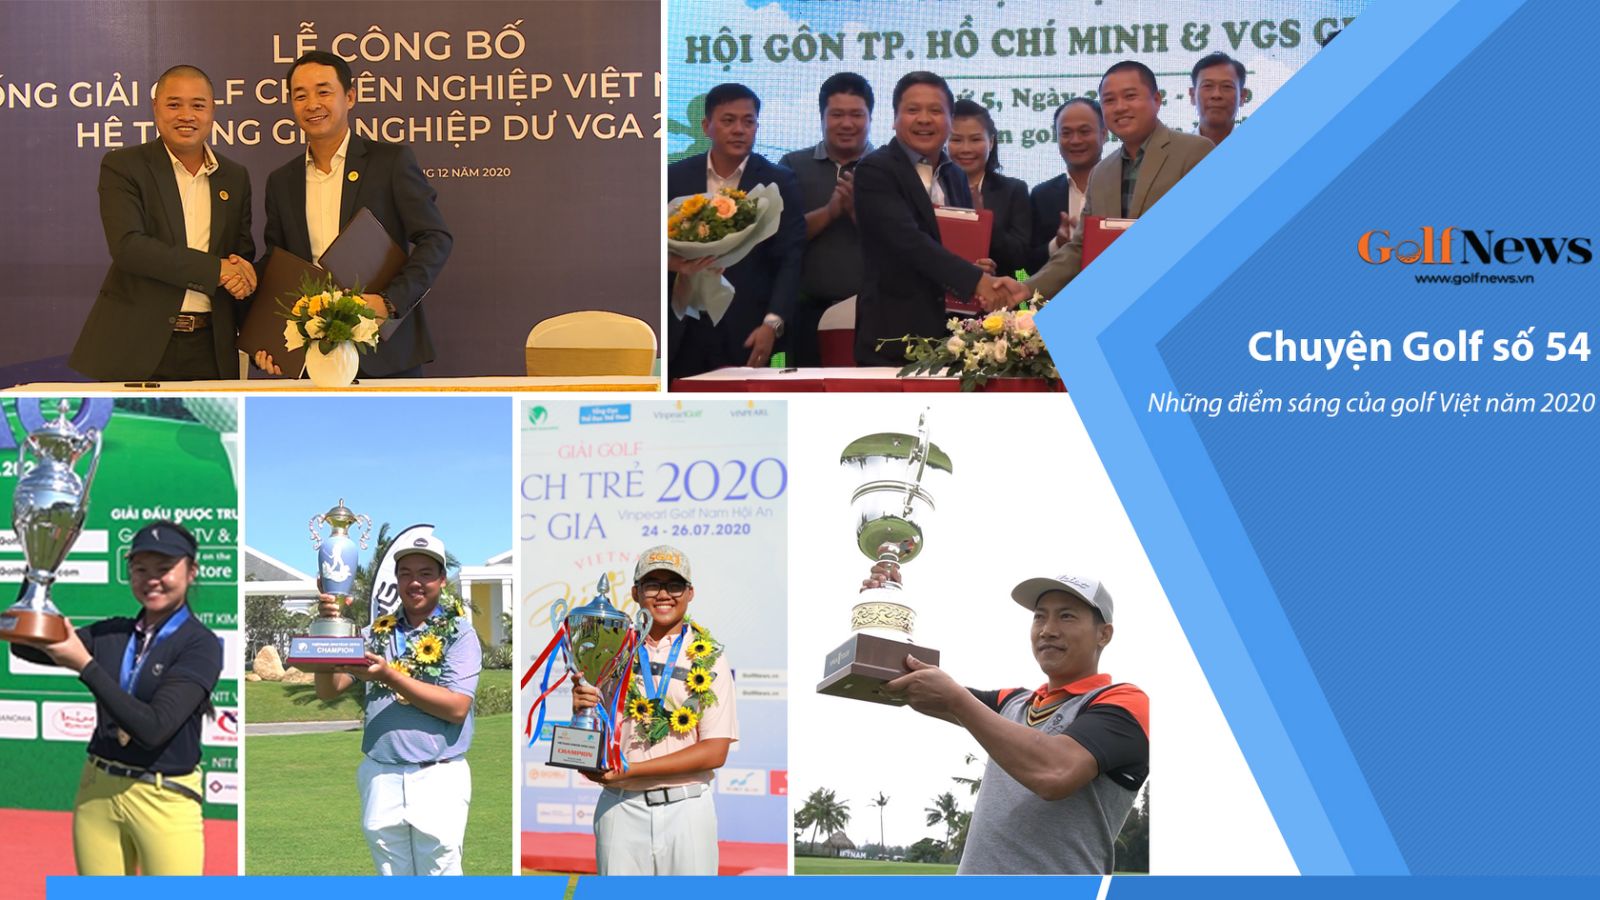 Những điểm sáng của golf Việt năm 2020